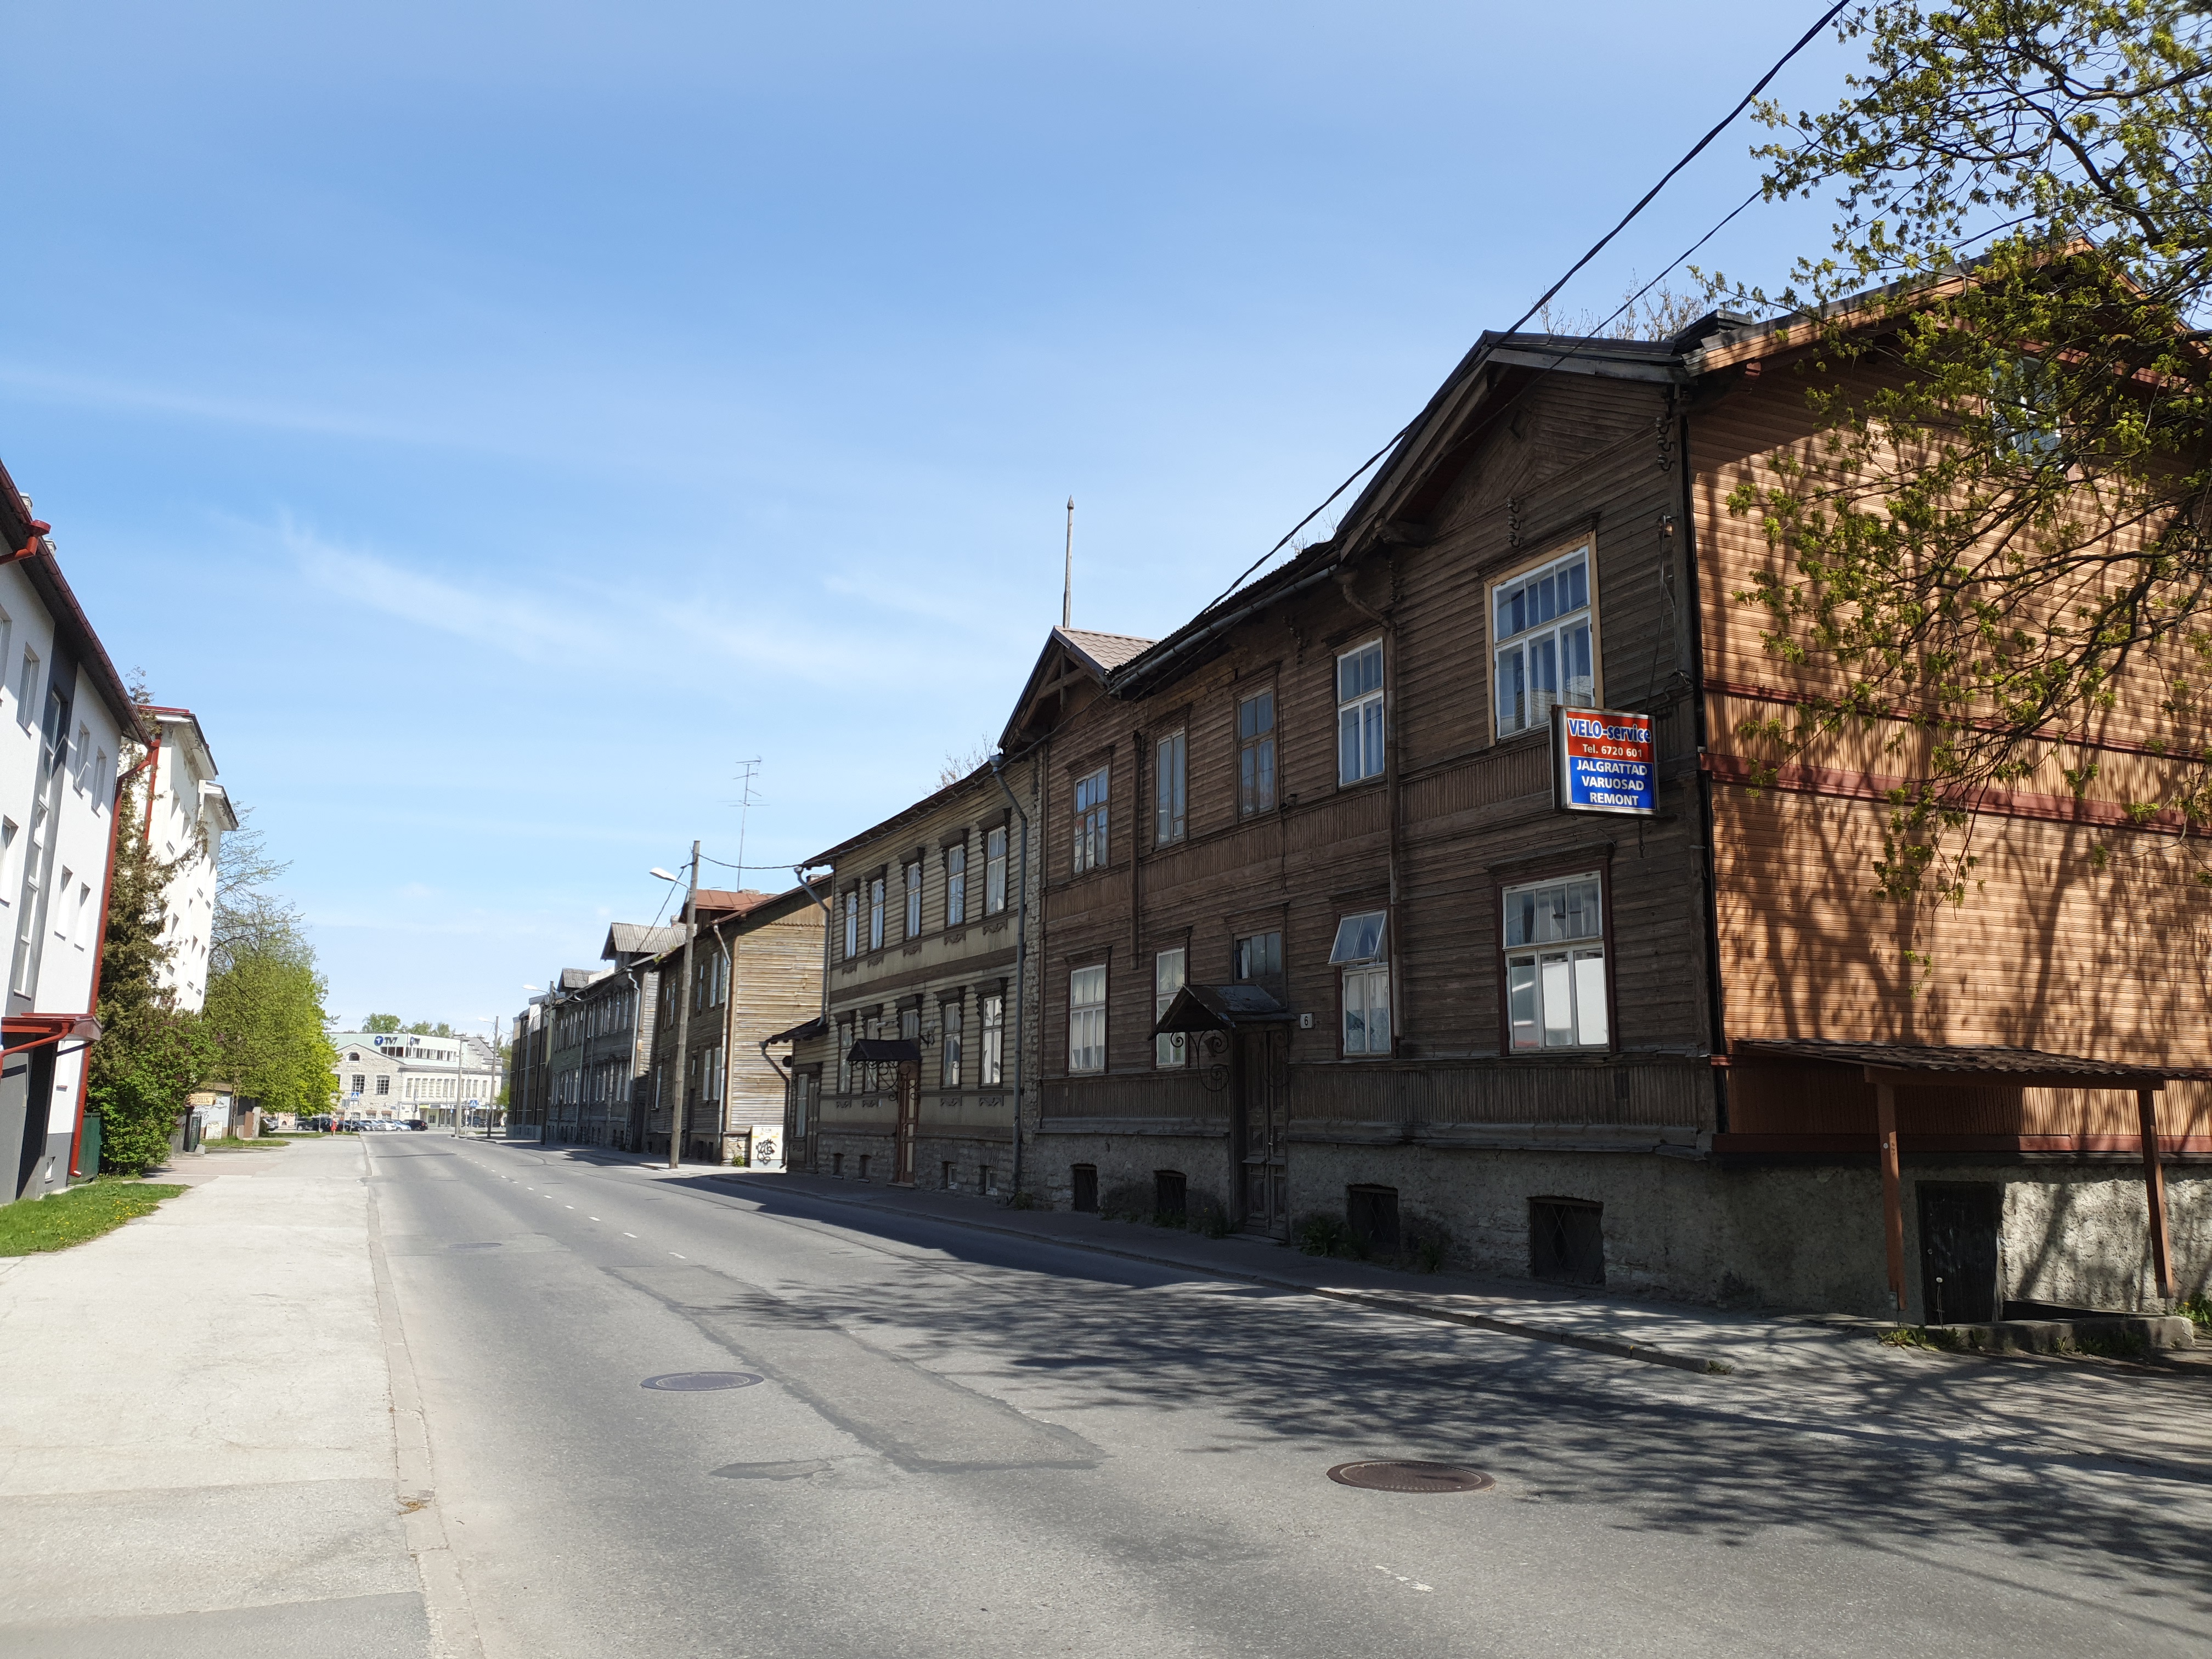 Telliskivi Street in Tallinn rephoto